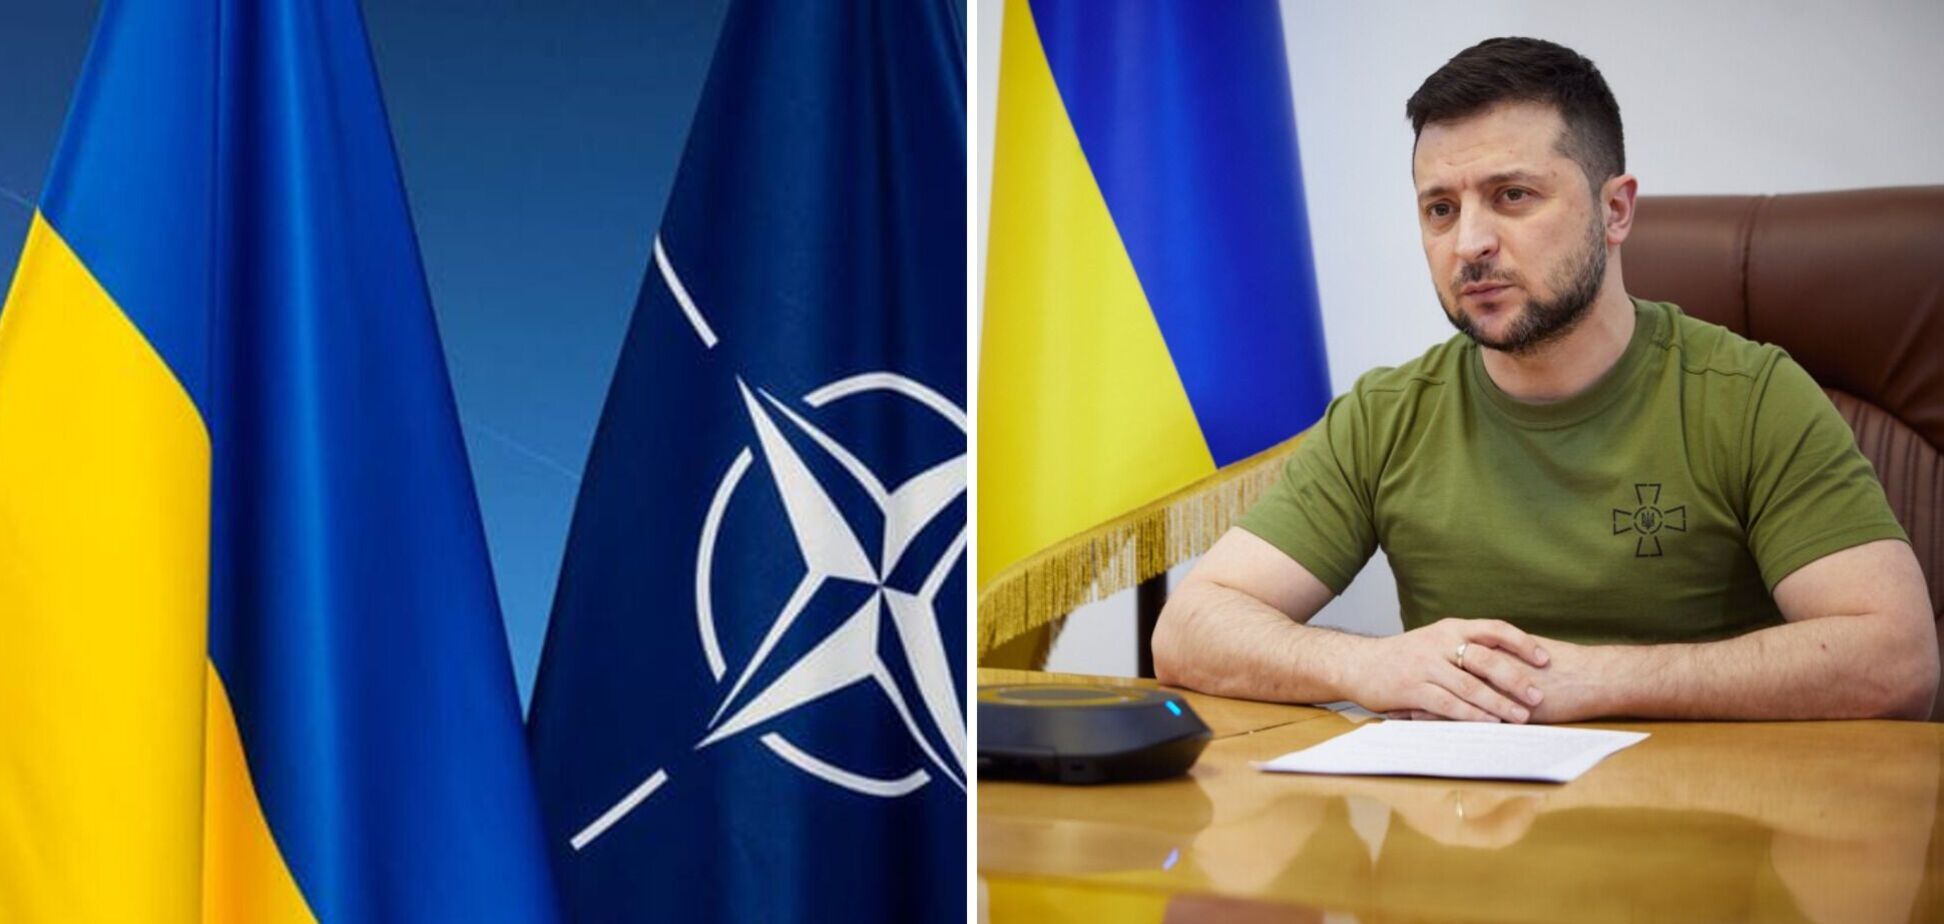 Польща сподівається, що Україна стане повноцінним членом НАТО через кілька років